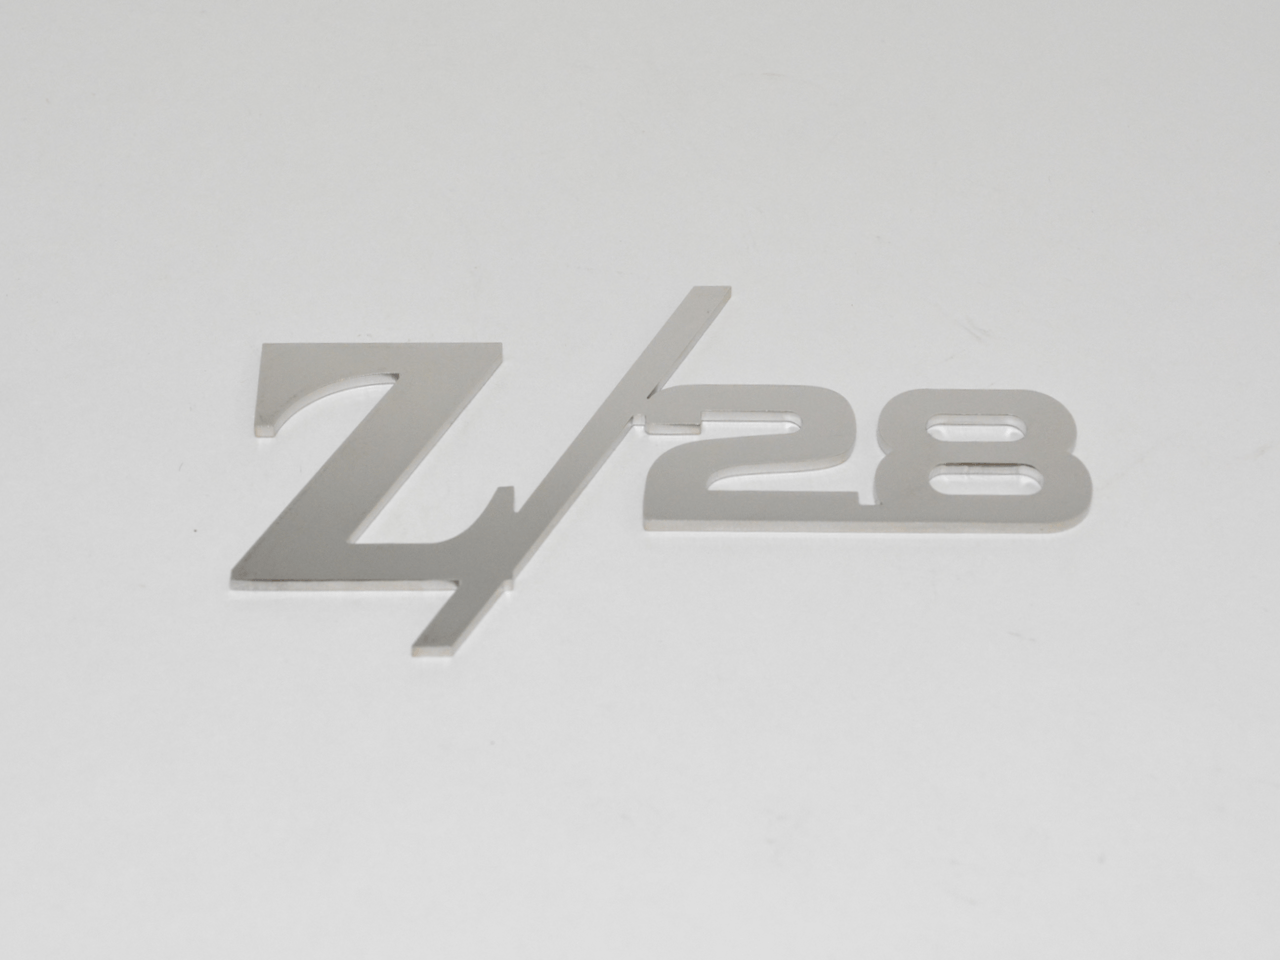 Z/28 Rear Panel Emblem; - MorrisClassic.com, emblem